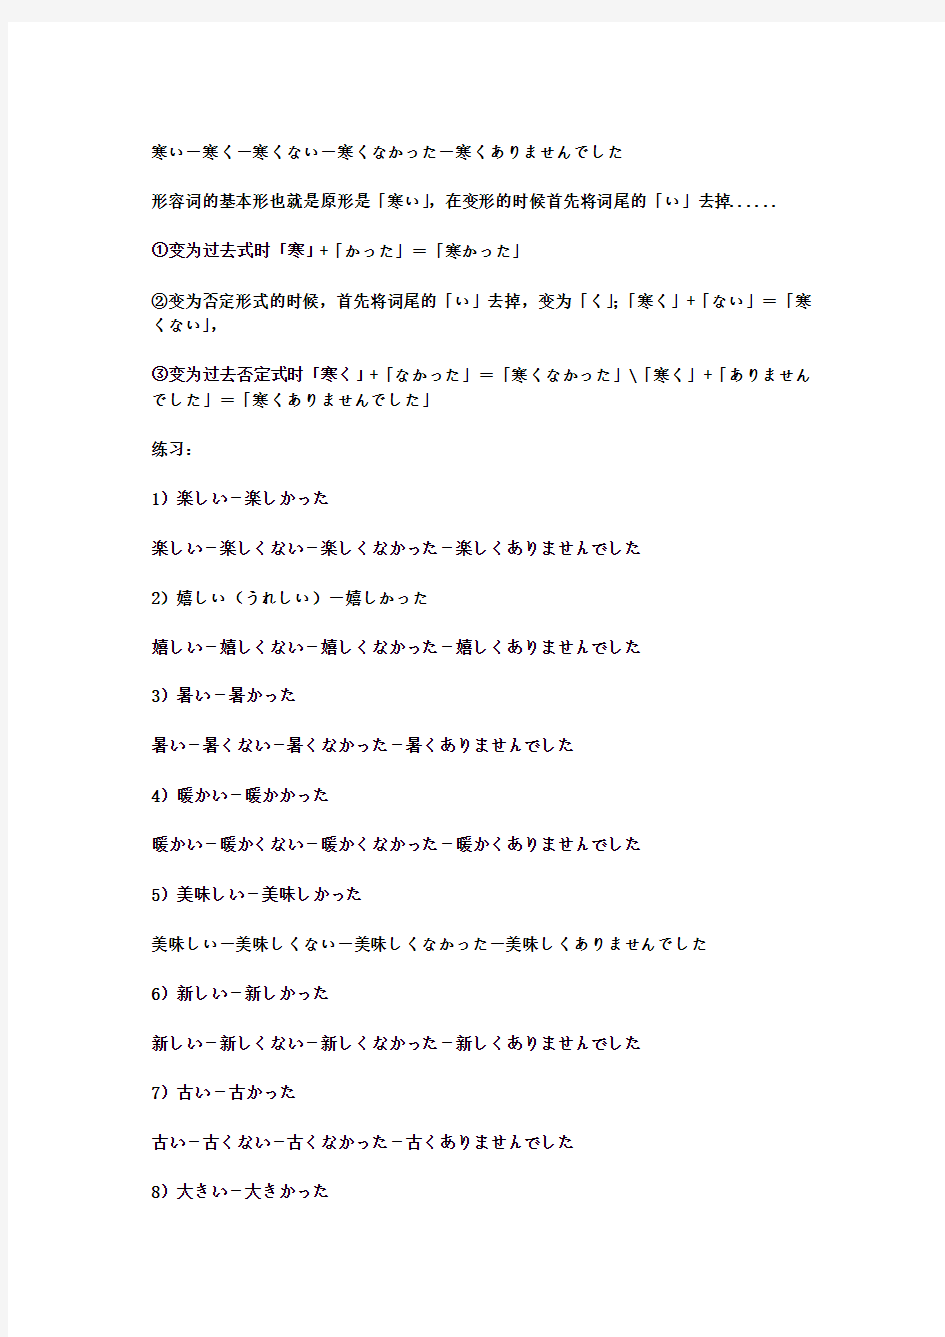 关于日语形容词变形总结及形容词词分类表1